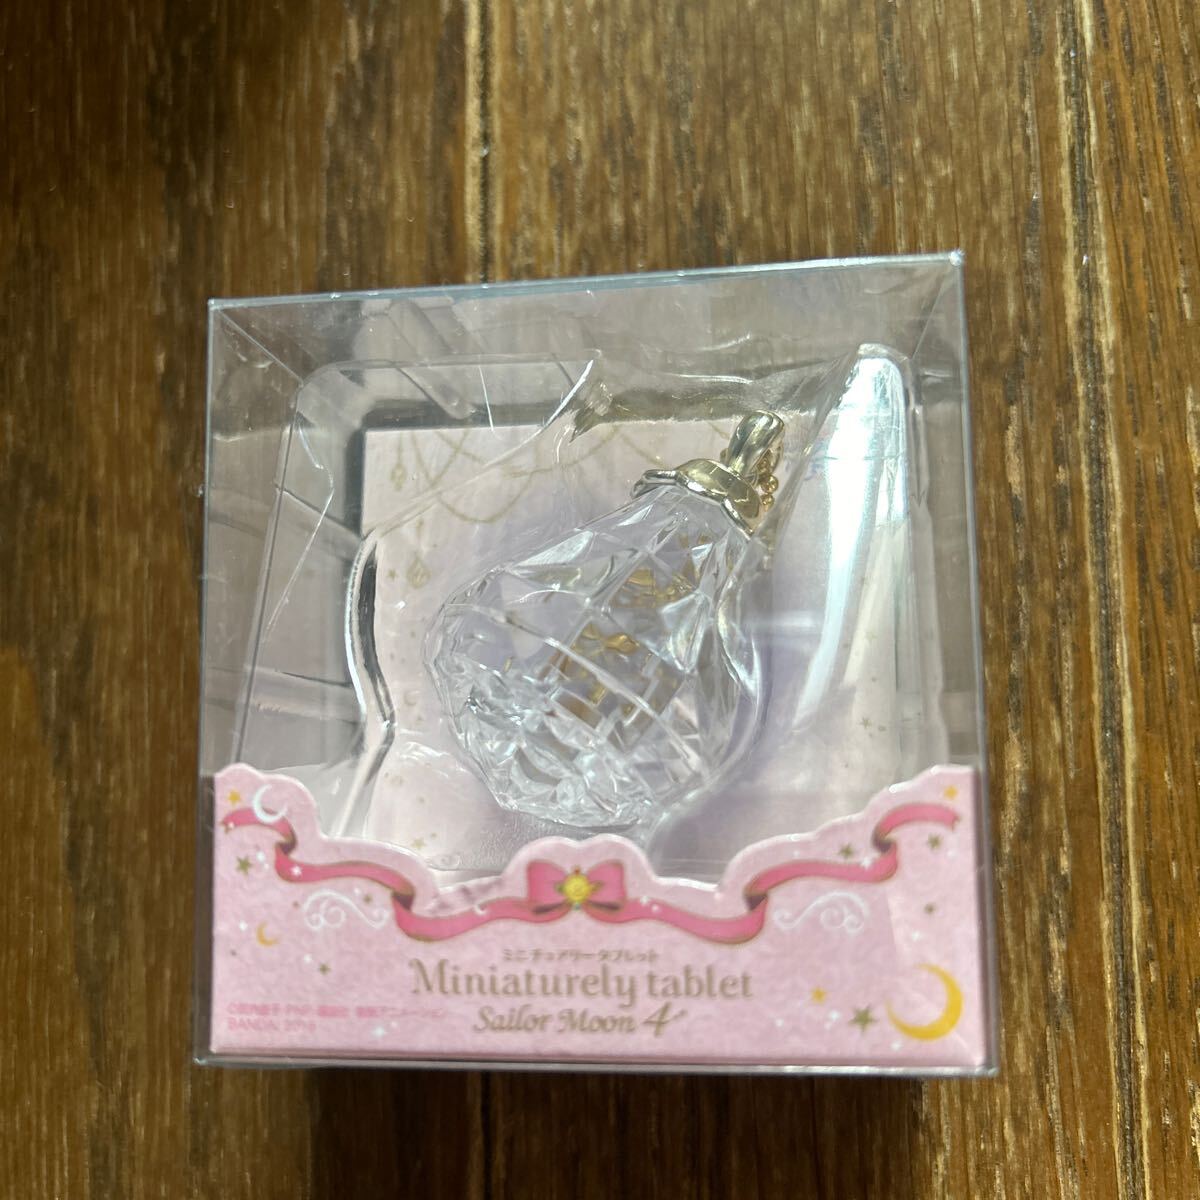  Pretty Soldier Sailor Moon miniature Lee tablet case 3 piece set 